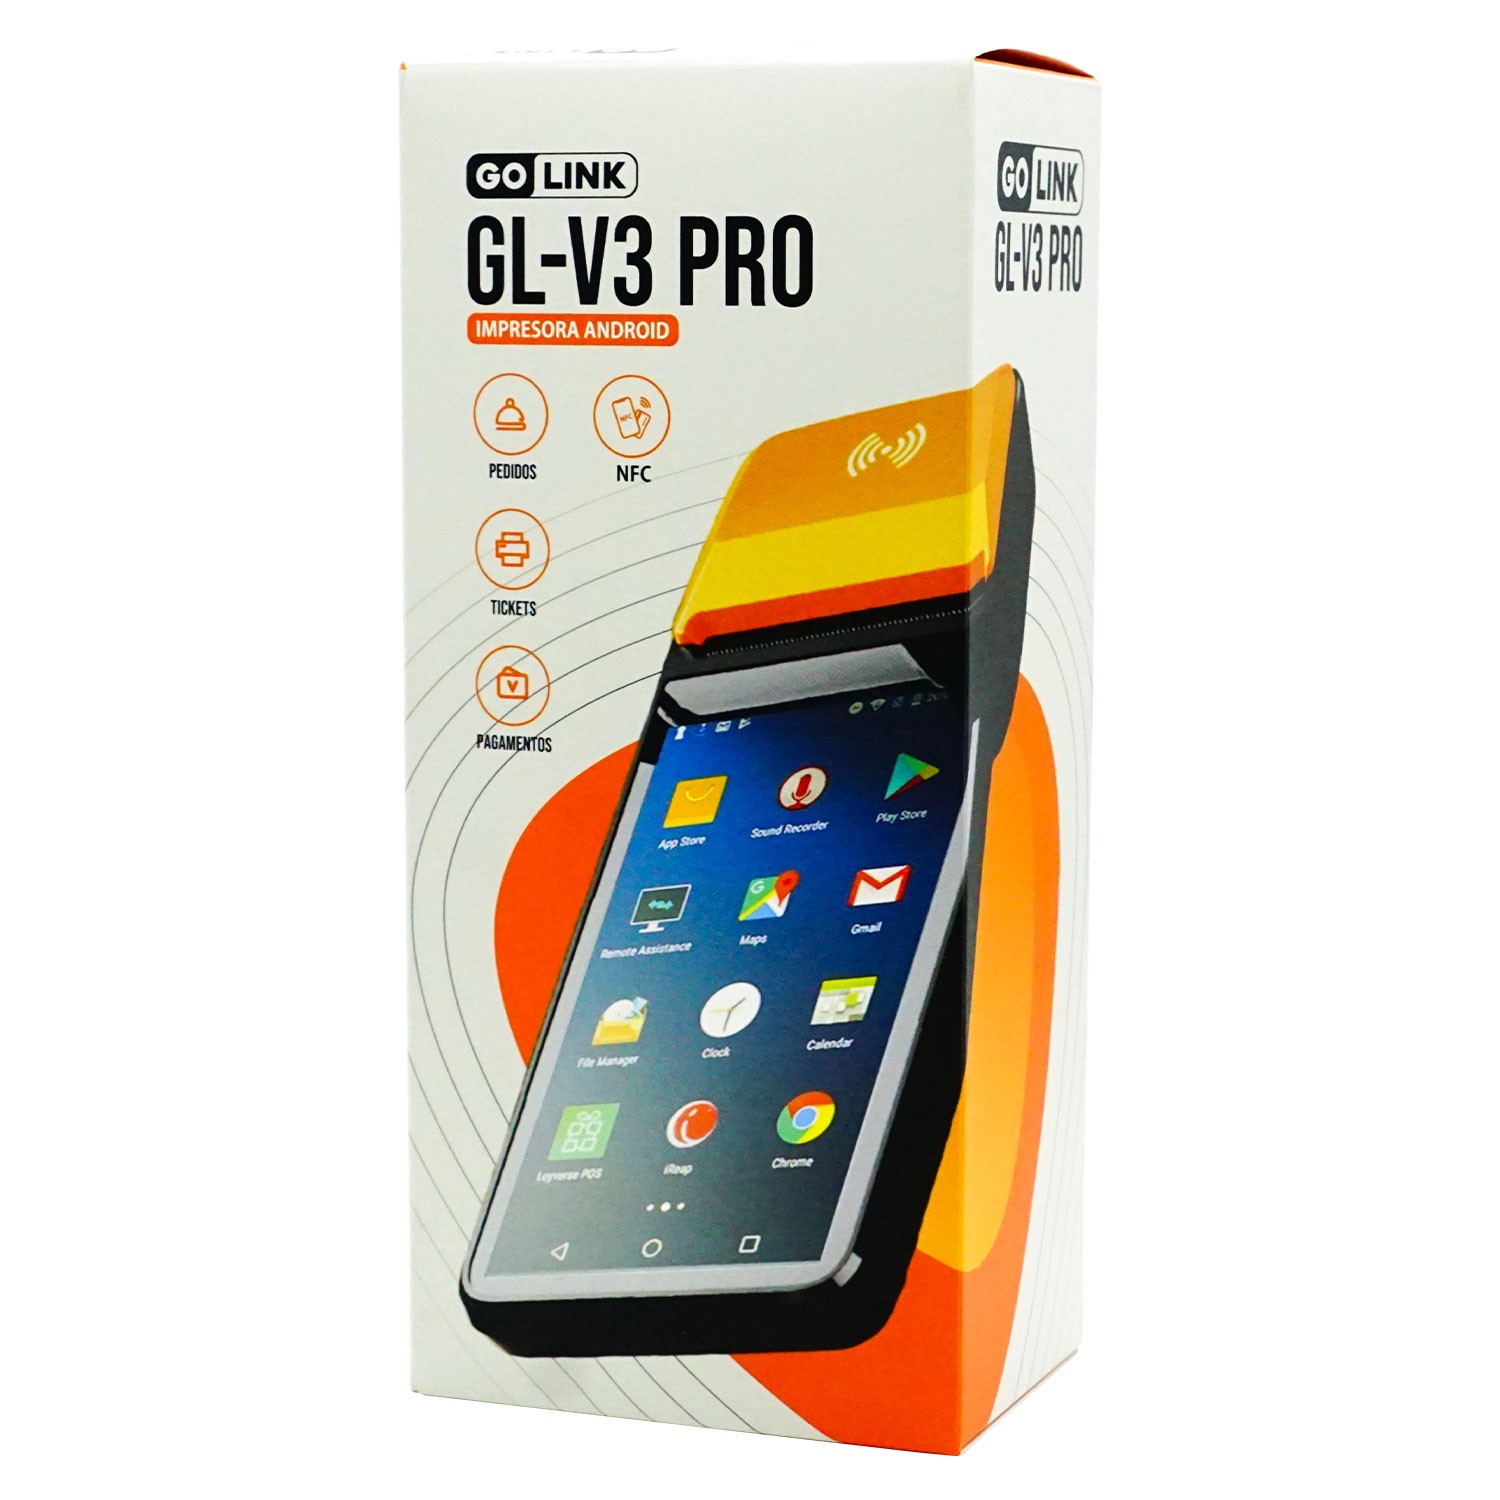 Impressora Golink GL-V3 Pro GL-5930 1GB RAM + 8GB ROM / Touch 58MM / NFC - Preto / Laranja